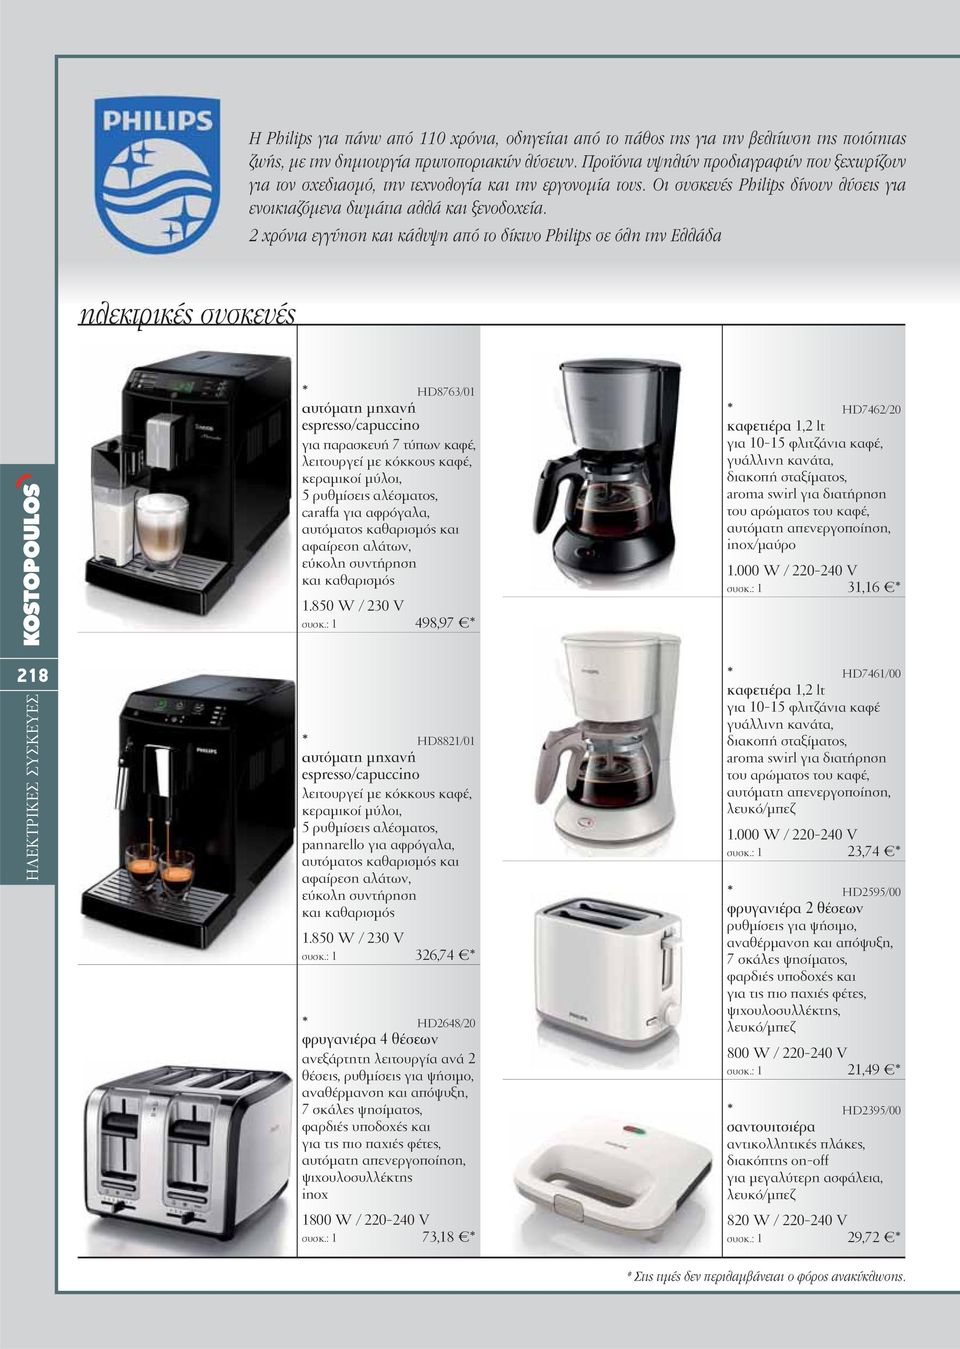 2 χρόνια εγγύηση και κάλυψη από το δίκτυο Philips σε όλη την Ελλάδα ηλεκτρικές συσκευές * HD8763/01 αυτόματη μηχανή espresso/capuccino για παρασκευή 7 τύπων καφέ, λειτουργεί με κόκκους καφέ,